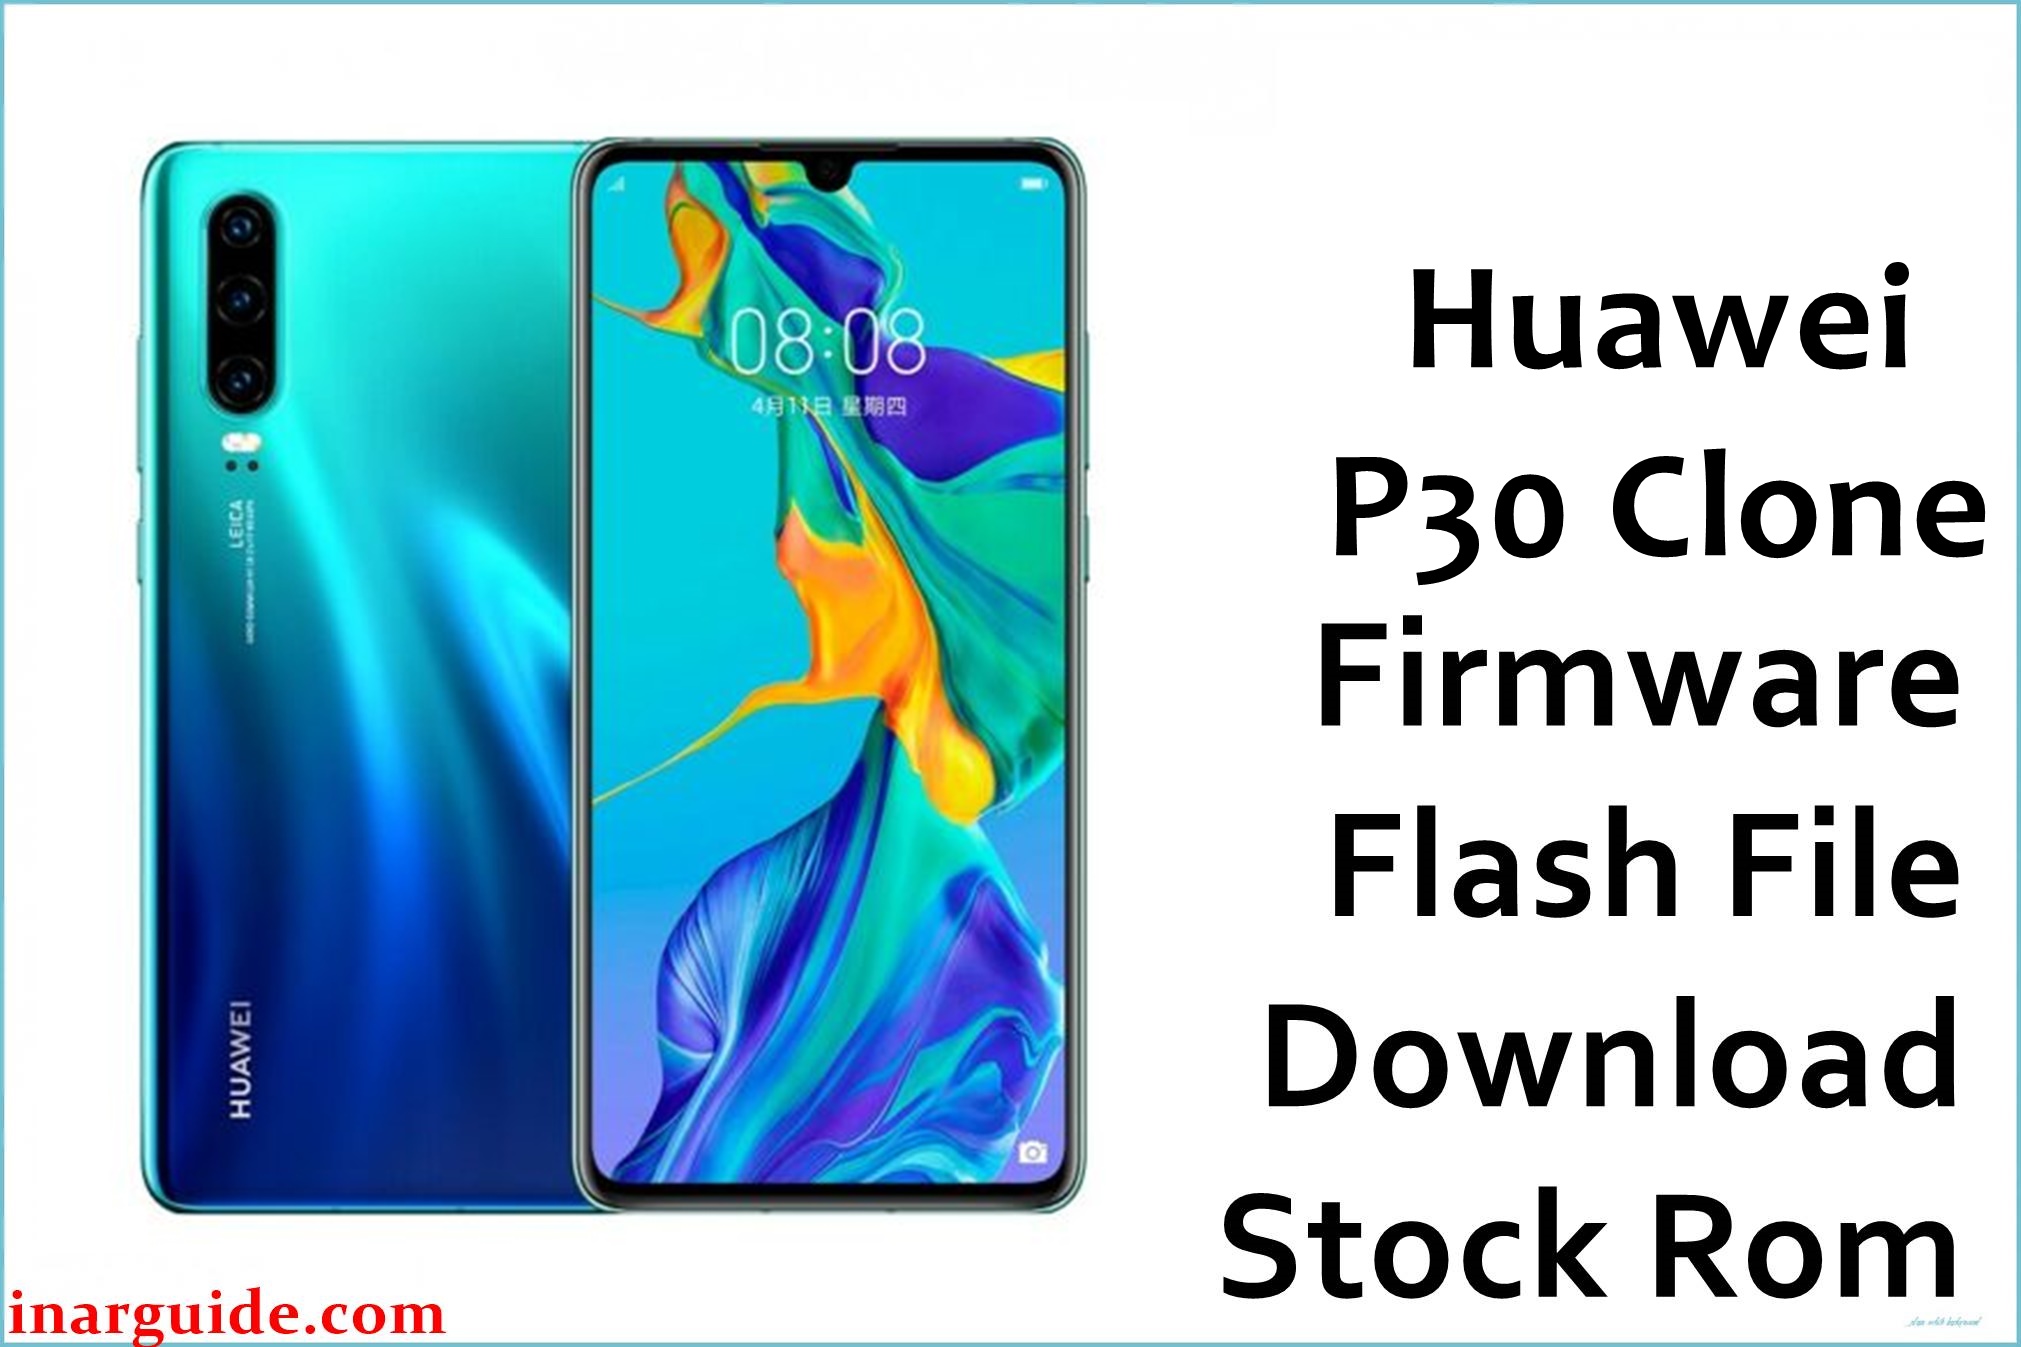 Huawei P30 Clone